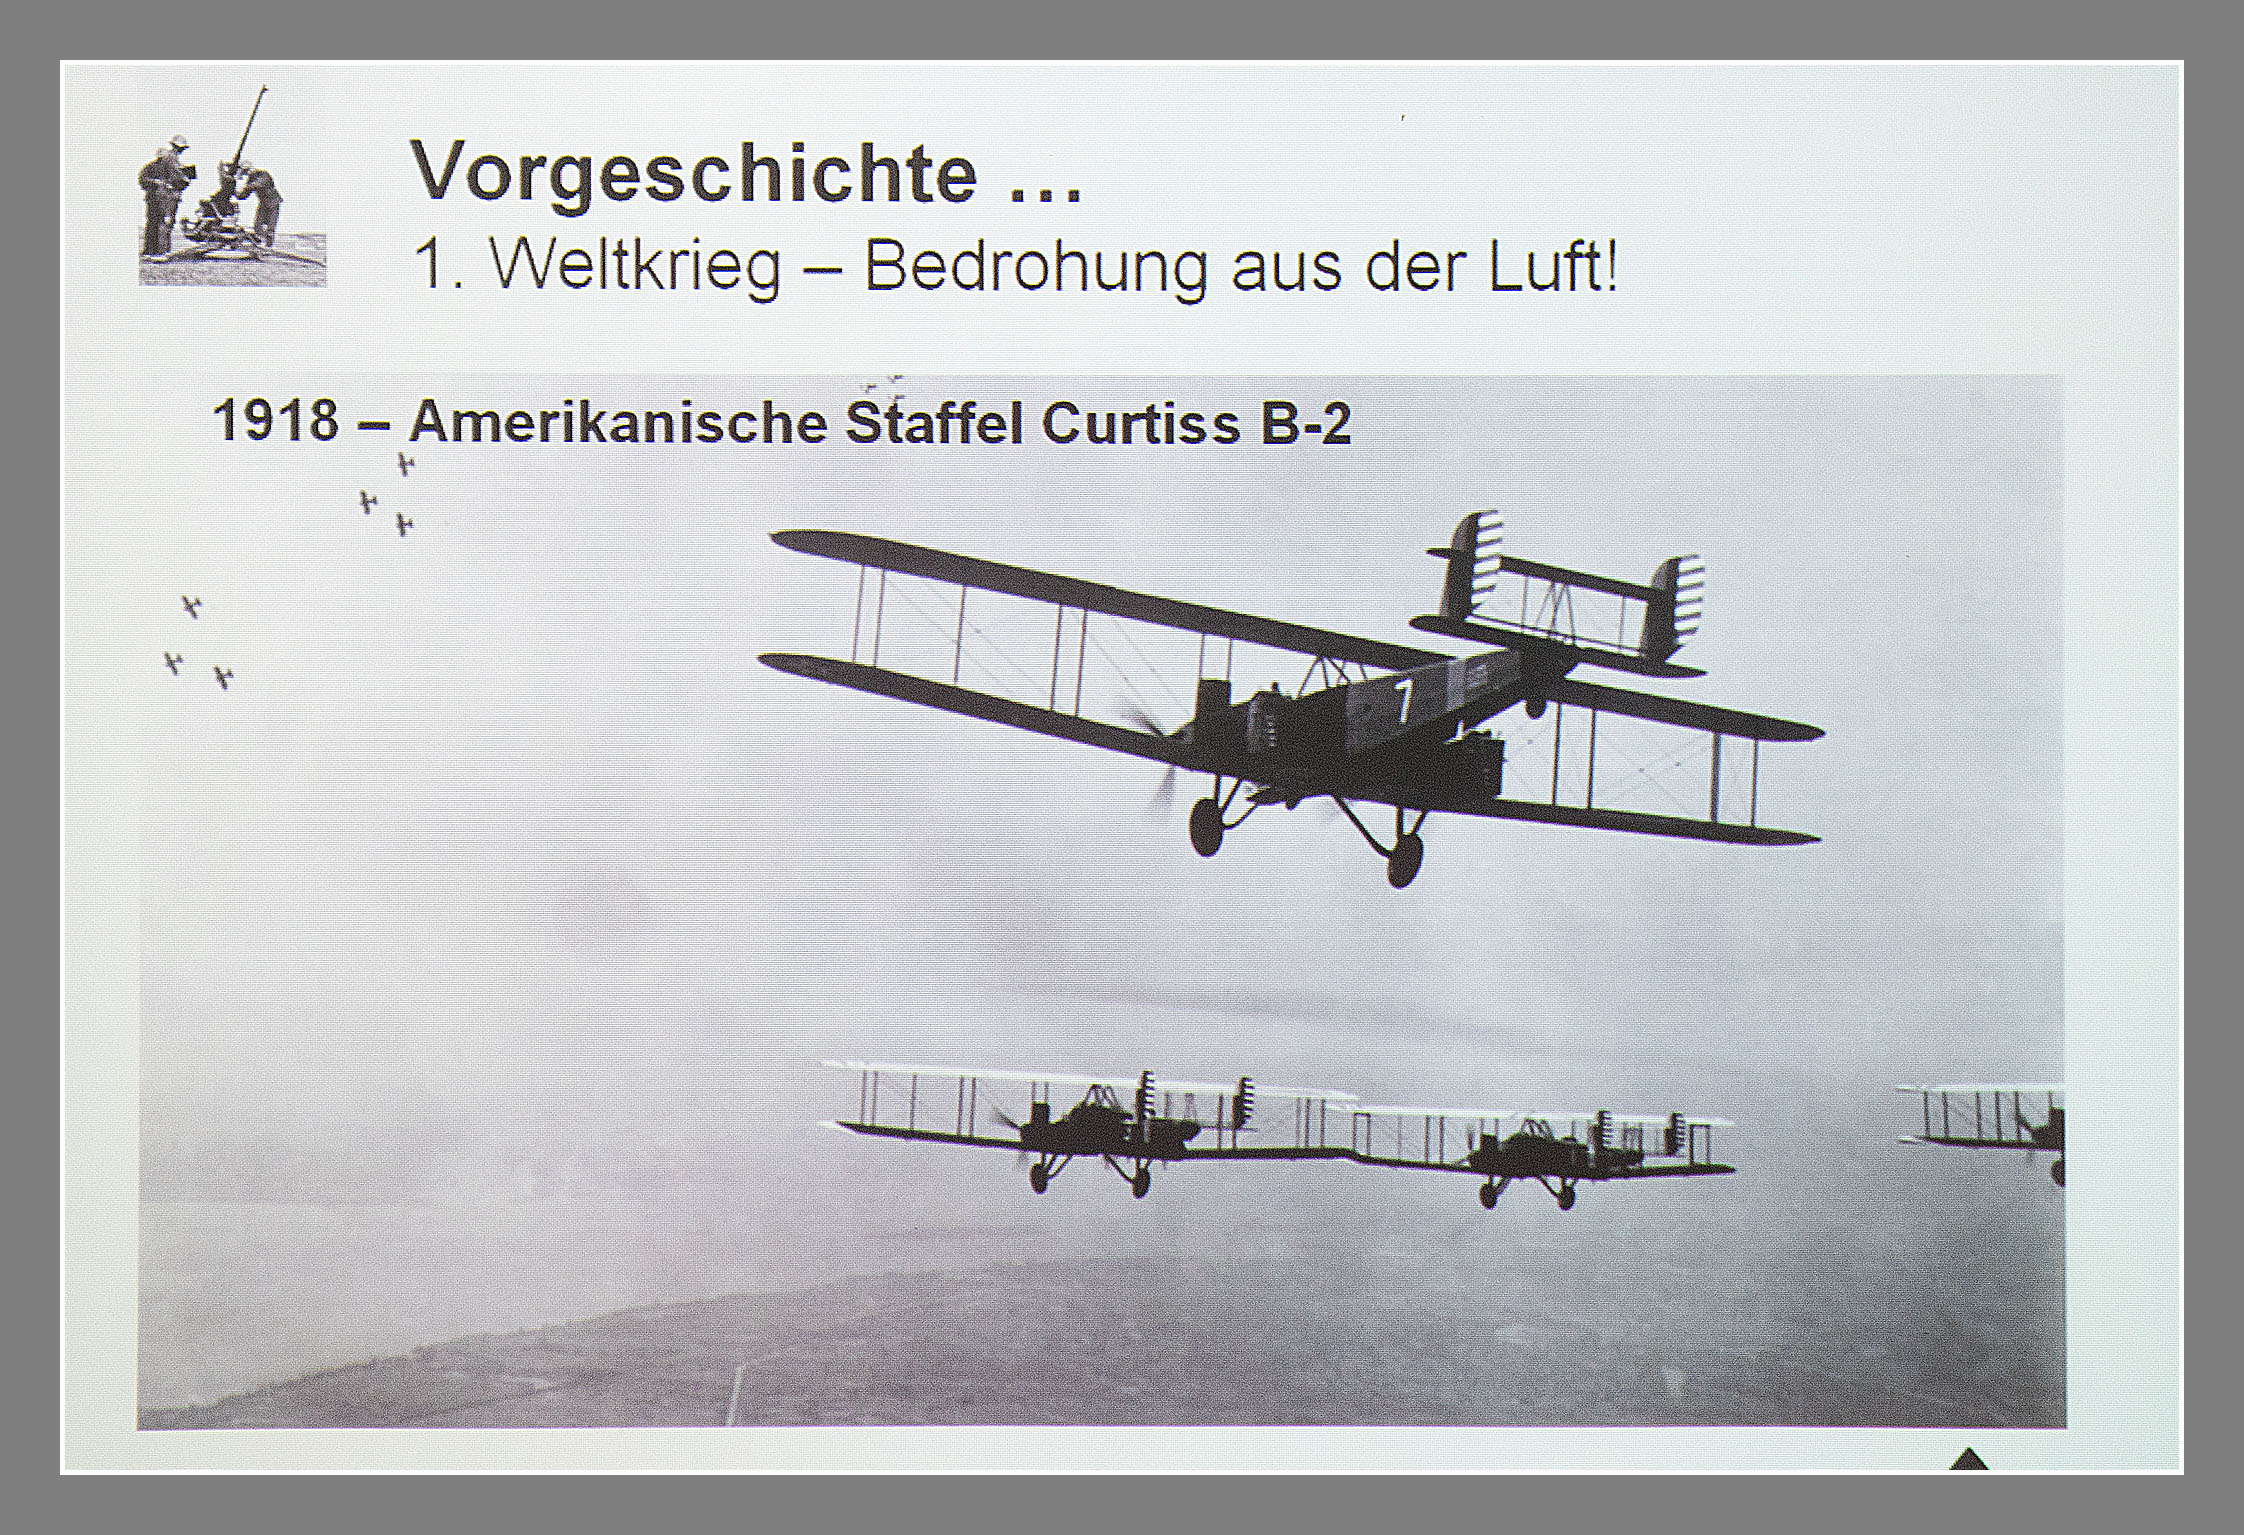 VSAM Vortrag Schutz der Schweizer Stauseen gegen Fliegerangriffe